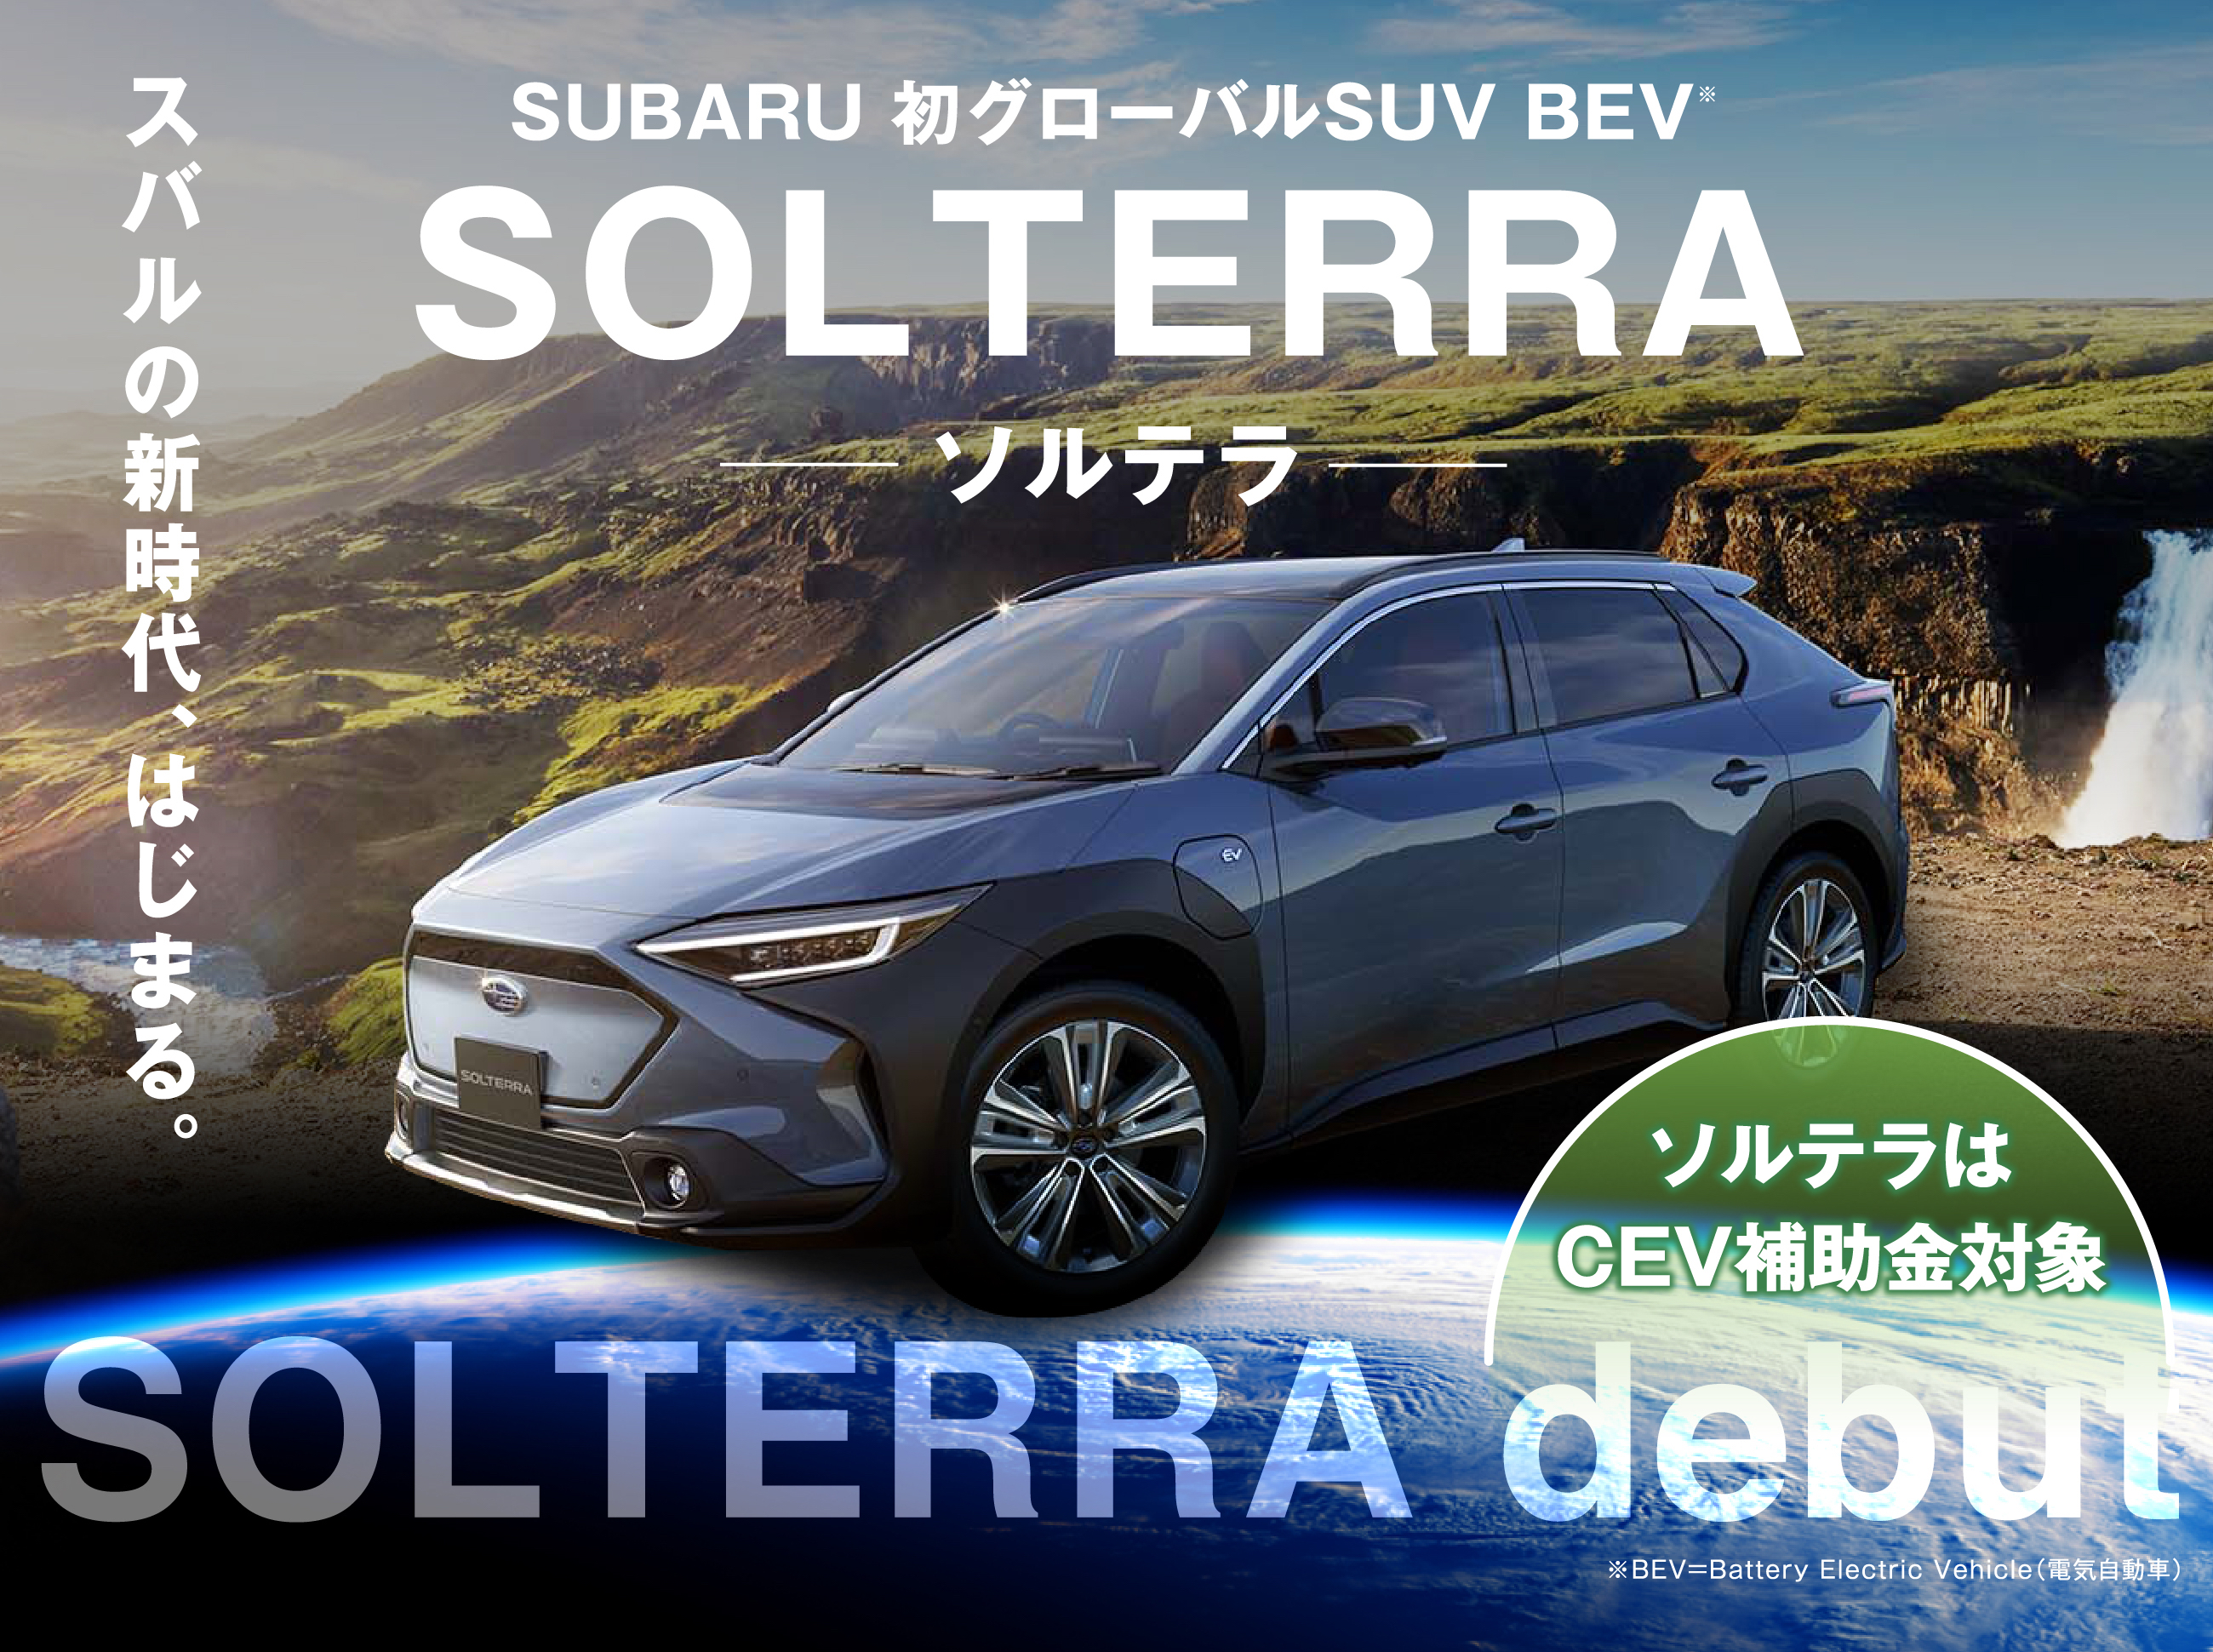 SUBARU 初グローバルSUV BEV※ SOLTERRA ソルテラ スバルの新時代、はじまる。 ソルテラはCEV補助金対象 ※BEV=Battery Electric Vehicle（電気自動車）